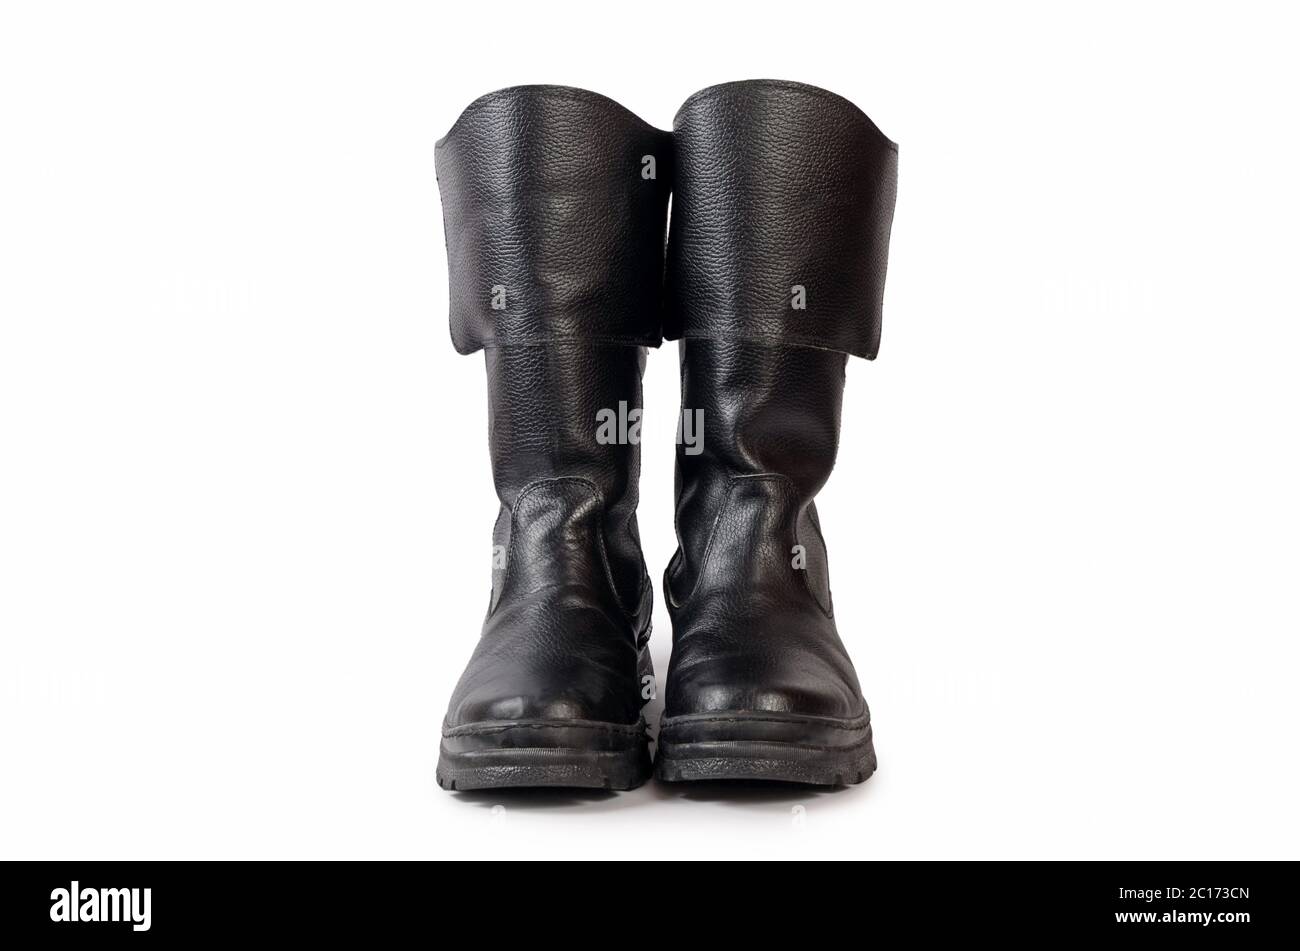 Herren schwarze Stiefel auf weißem Hintergrund Stockfotografie - Alamy